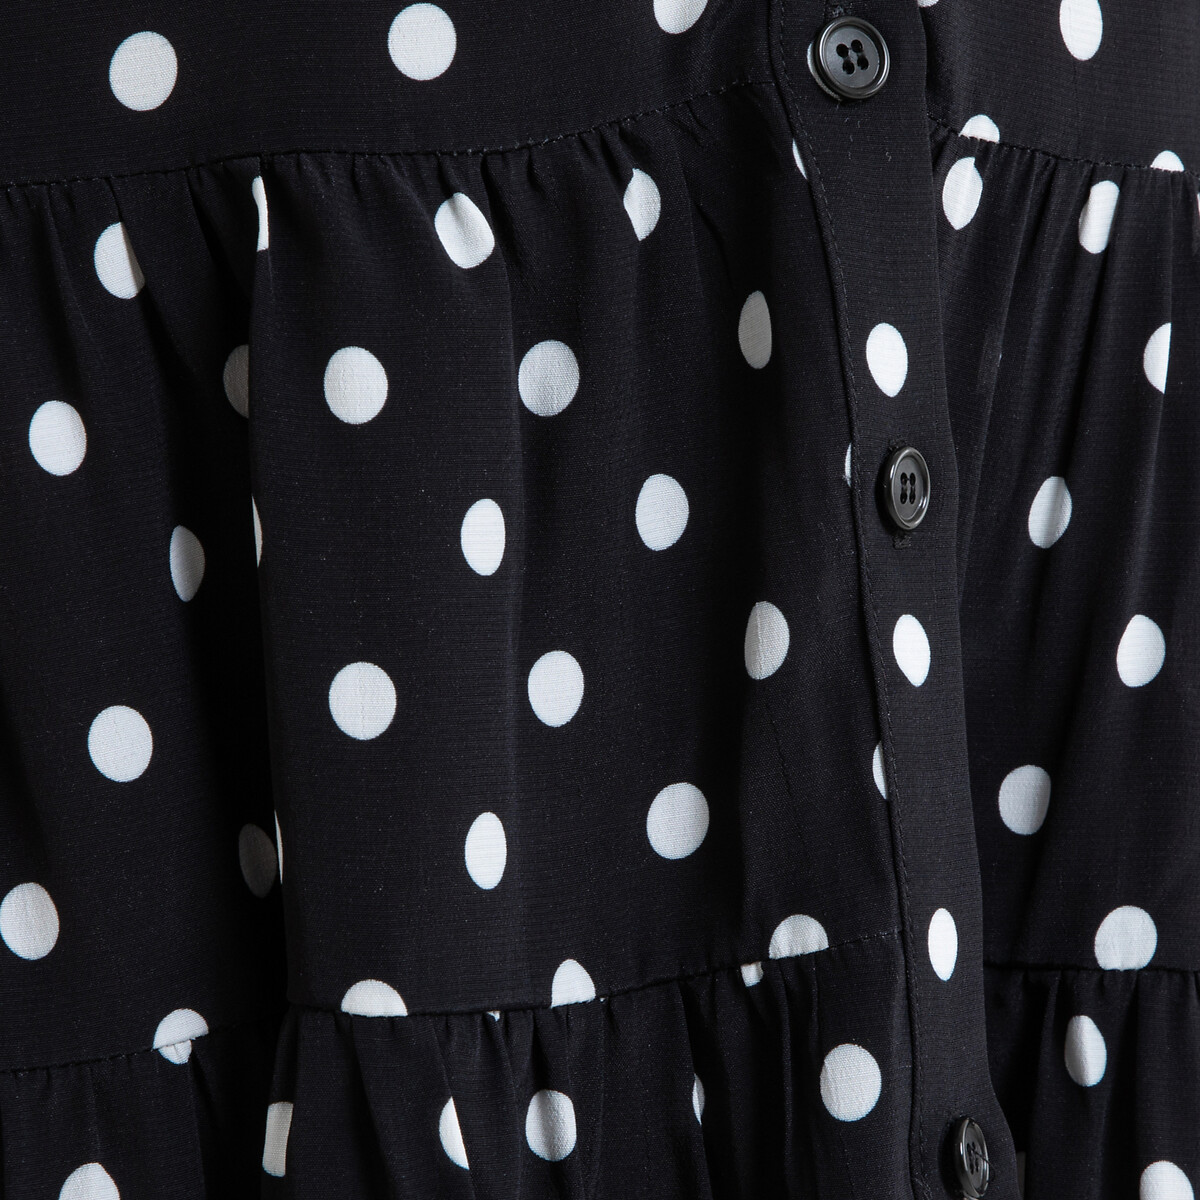 Платье La Redoute Короткое расклешенное в горошек RITA 40 (FR) - 46 (RUS) черный, размер 40 (FR) - 46 (RUS) Короткое расклешенное в горошек RITA 40 (FR) - 46 (RUS) черный - фото 4